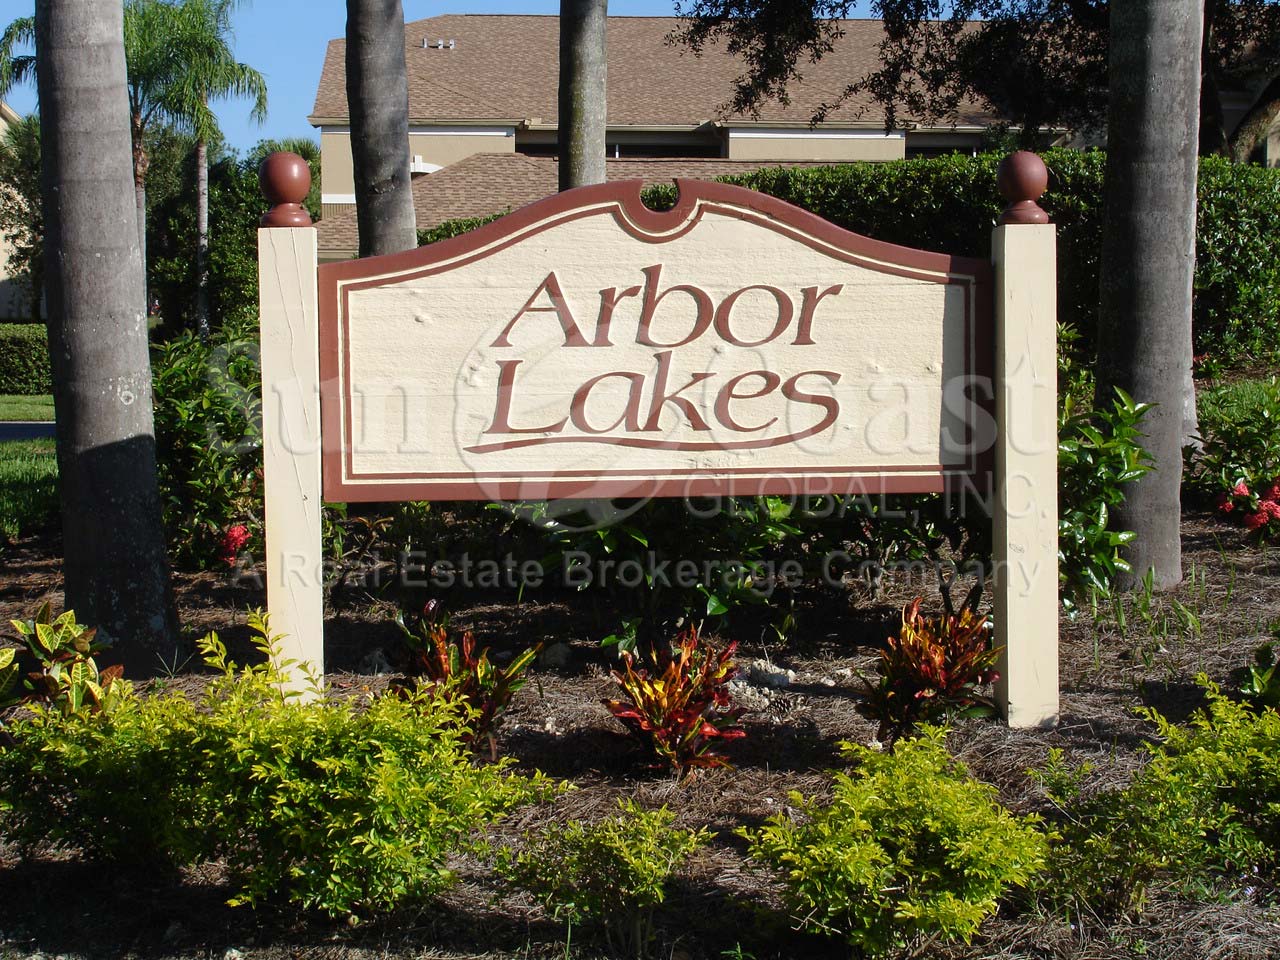 Arbor Lakes signage